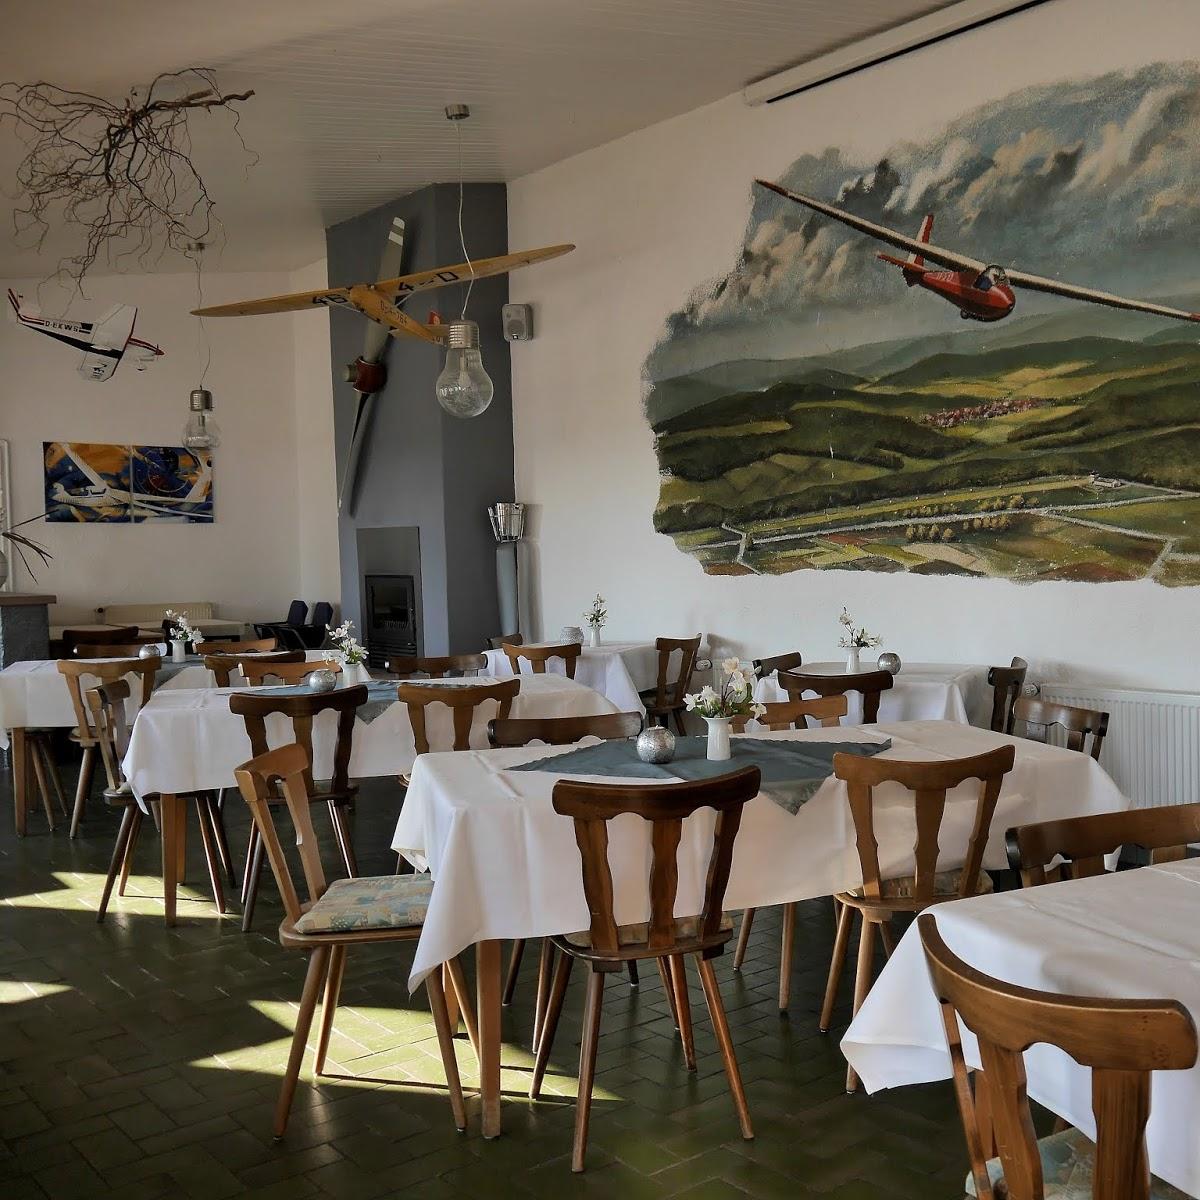 Restaurant "Gasthaus Zum Hirsch" in  König